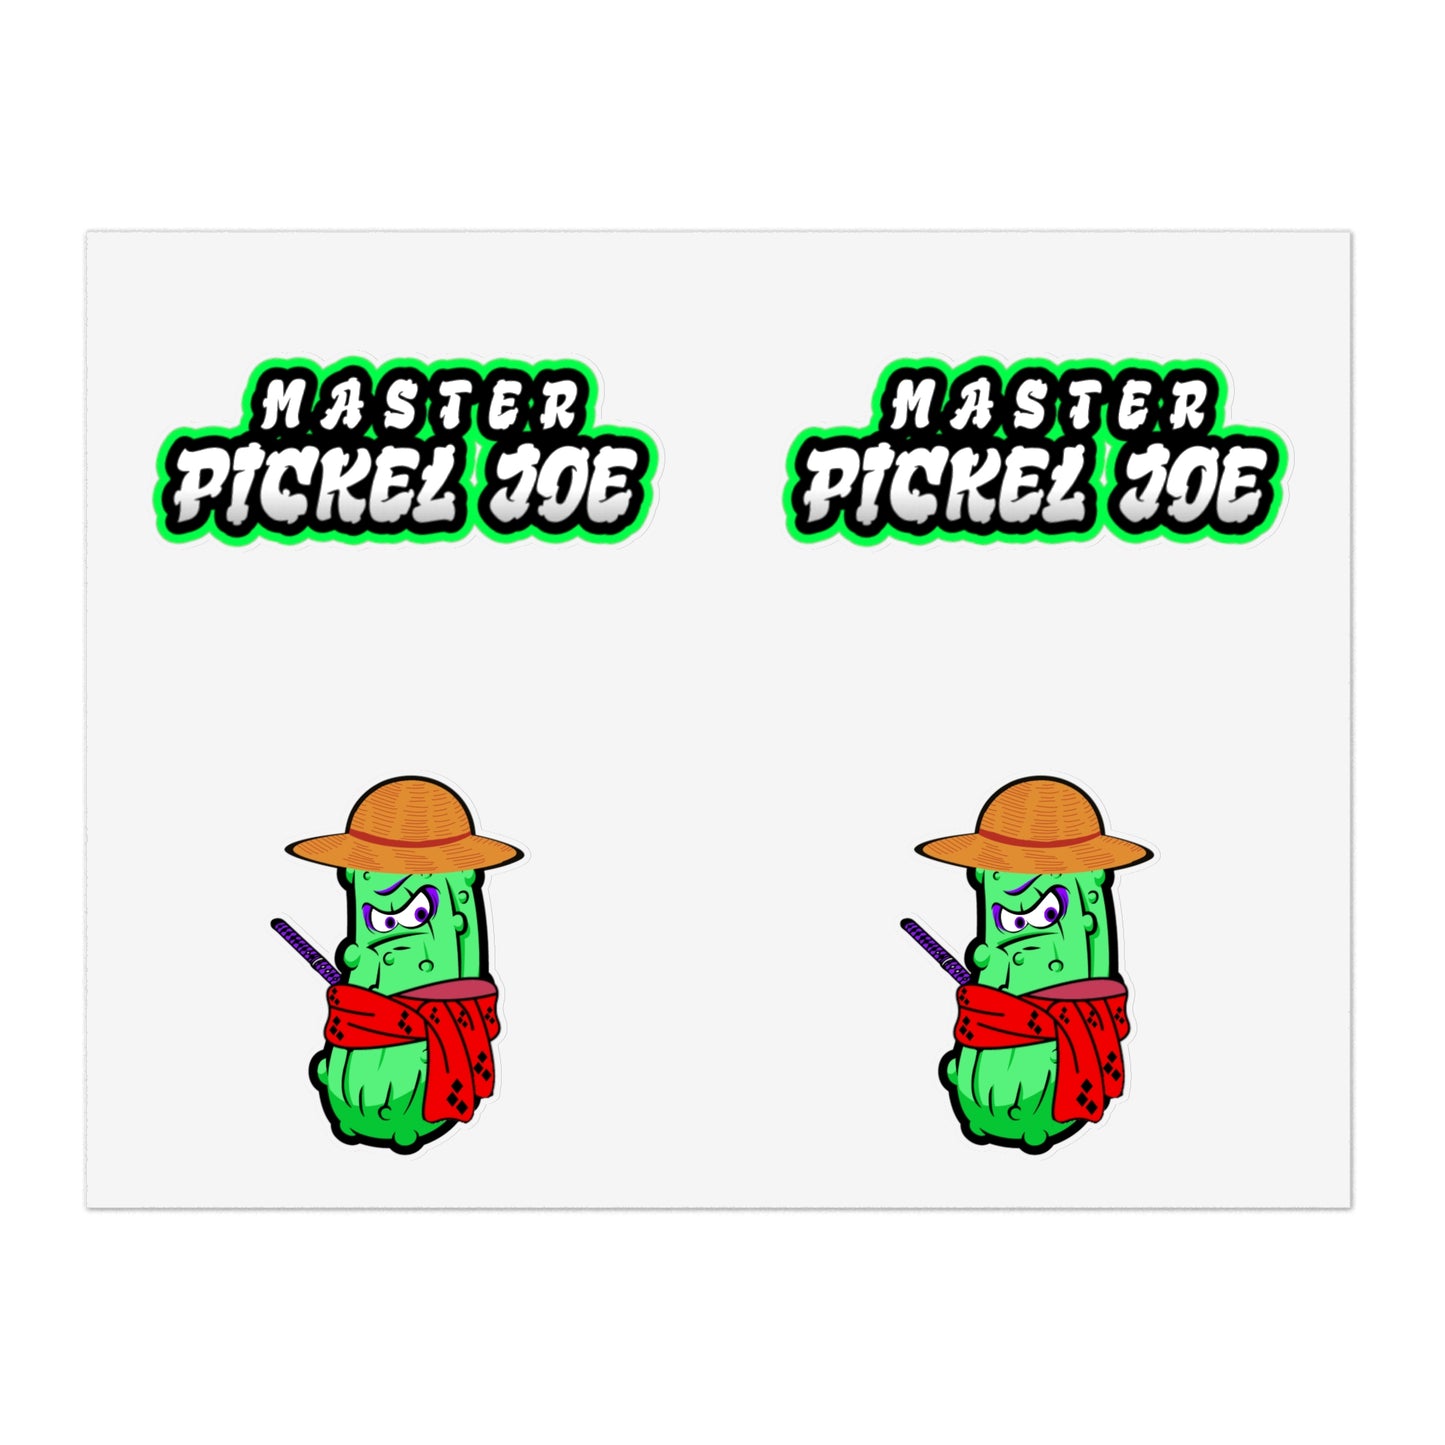 Master Pickel Joe Sticker Sheets